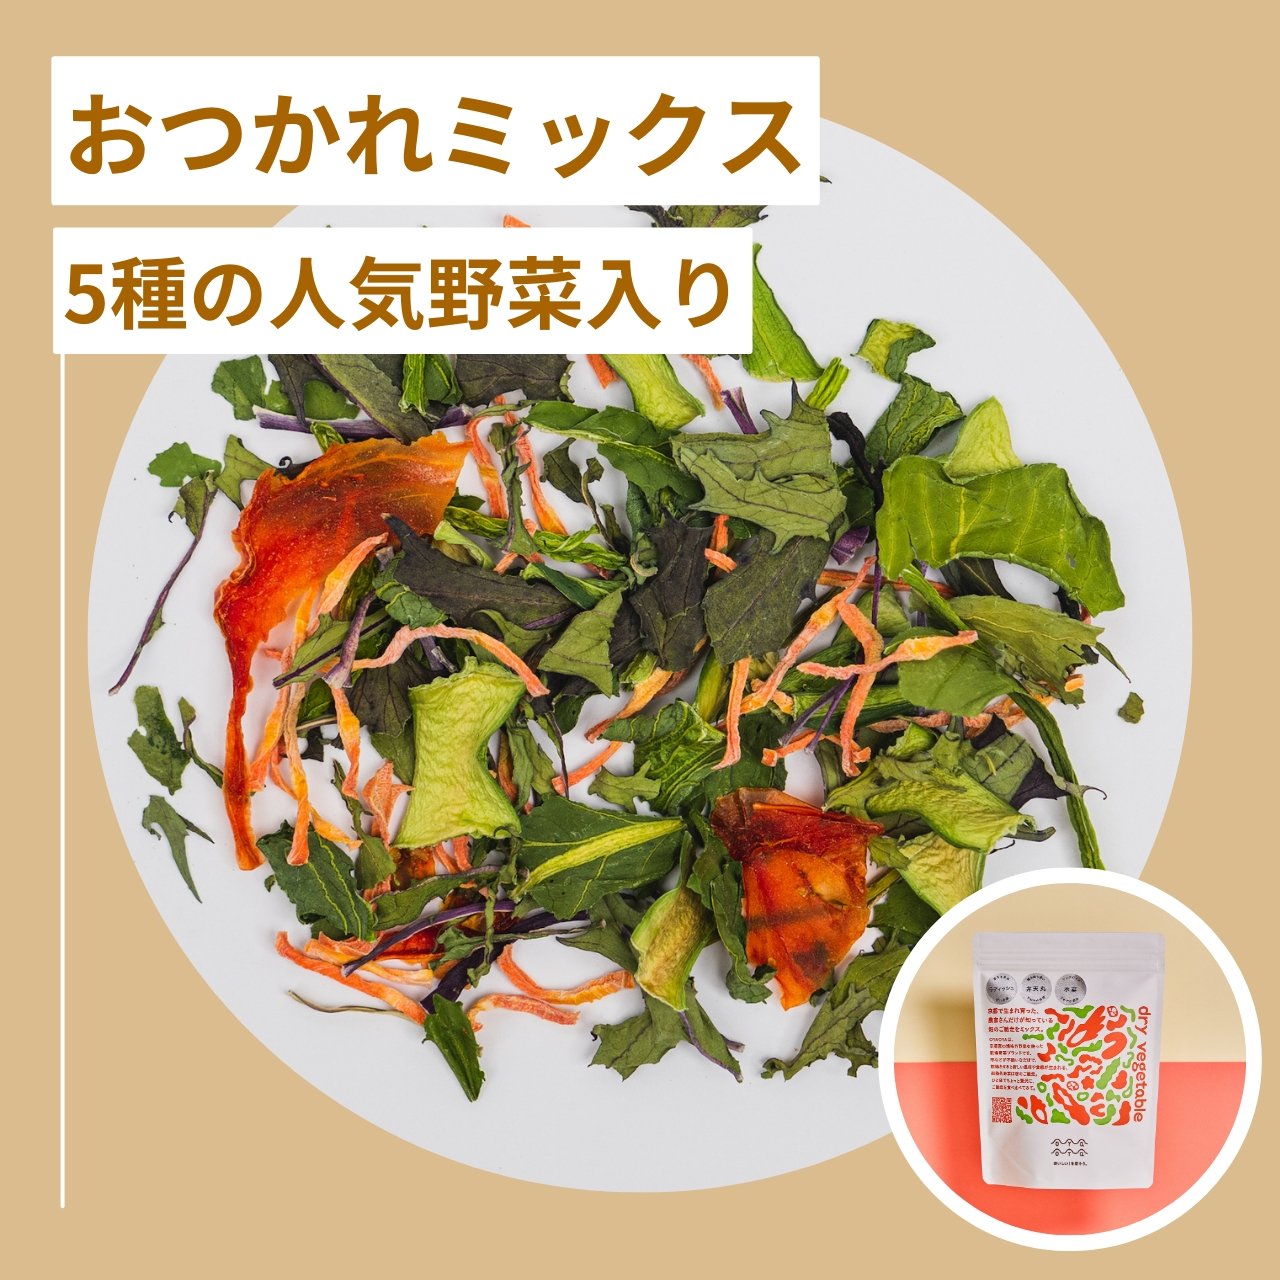 乾燥野菜(７０g×2) - 野菜